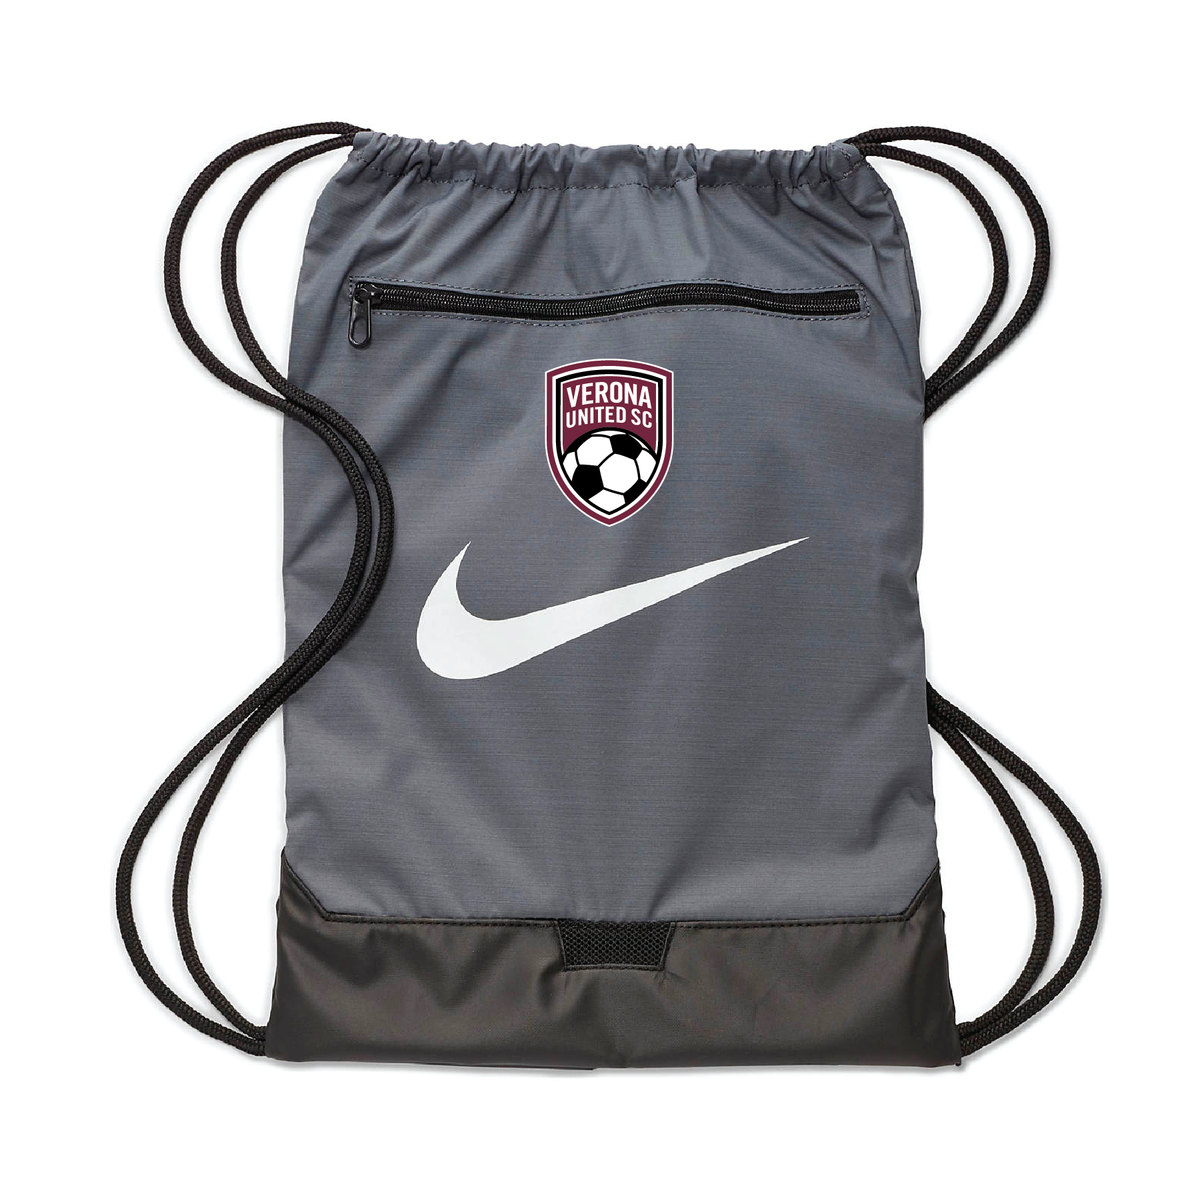 Verona Nike Brasilia String Bag Grey – Soccer Zone USA